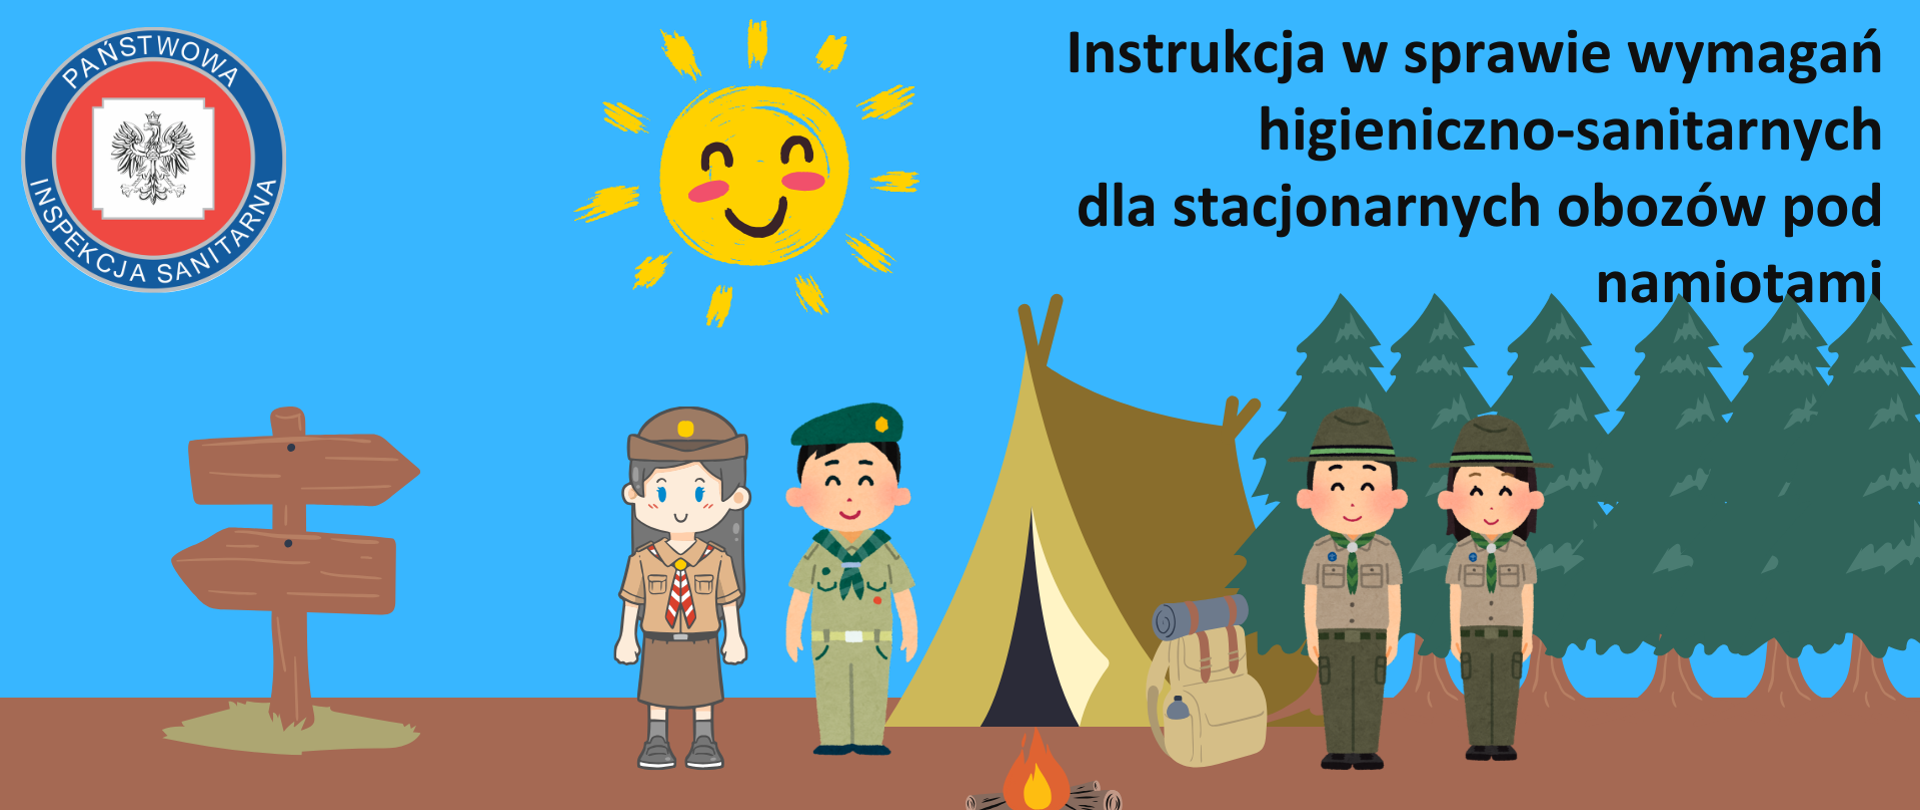 Infografika przedstawia młodzież wypoczywającą na obozie pod namiotami, w tle widoczne: drogowskaz, młodzież namiot, ognisko, drzewa.